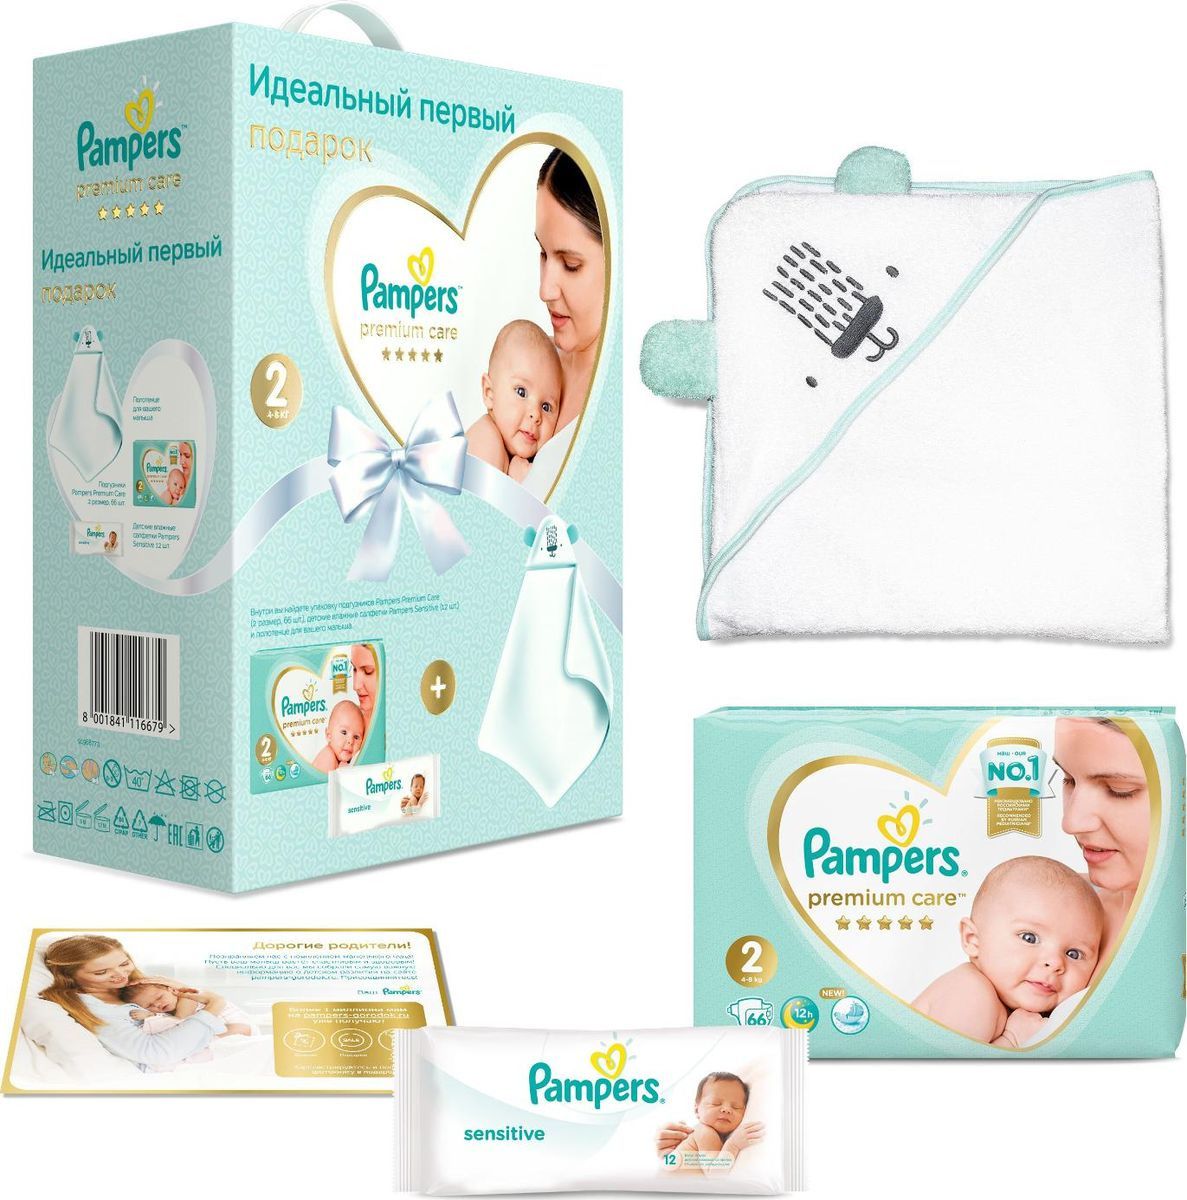 Pampers Подарочный набор Premium Care для новорожденных, размер 2 (4-8 кг), детское полотенце